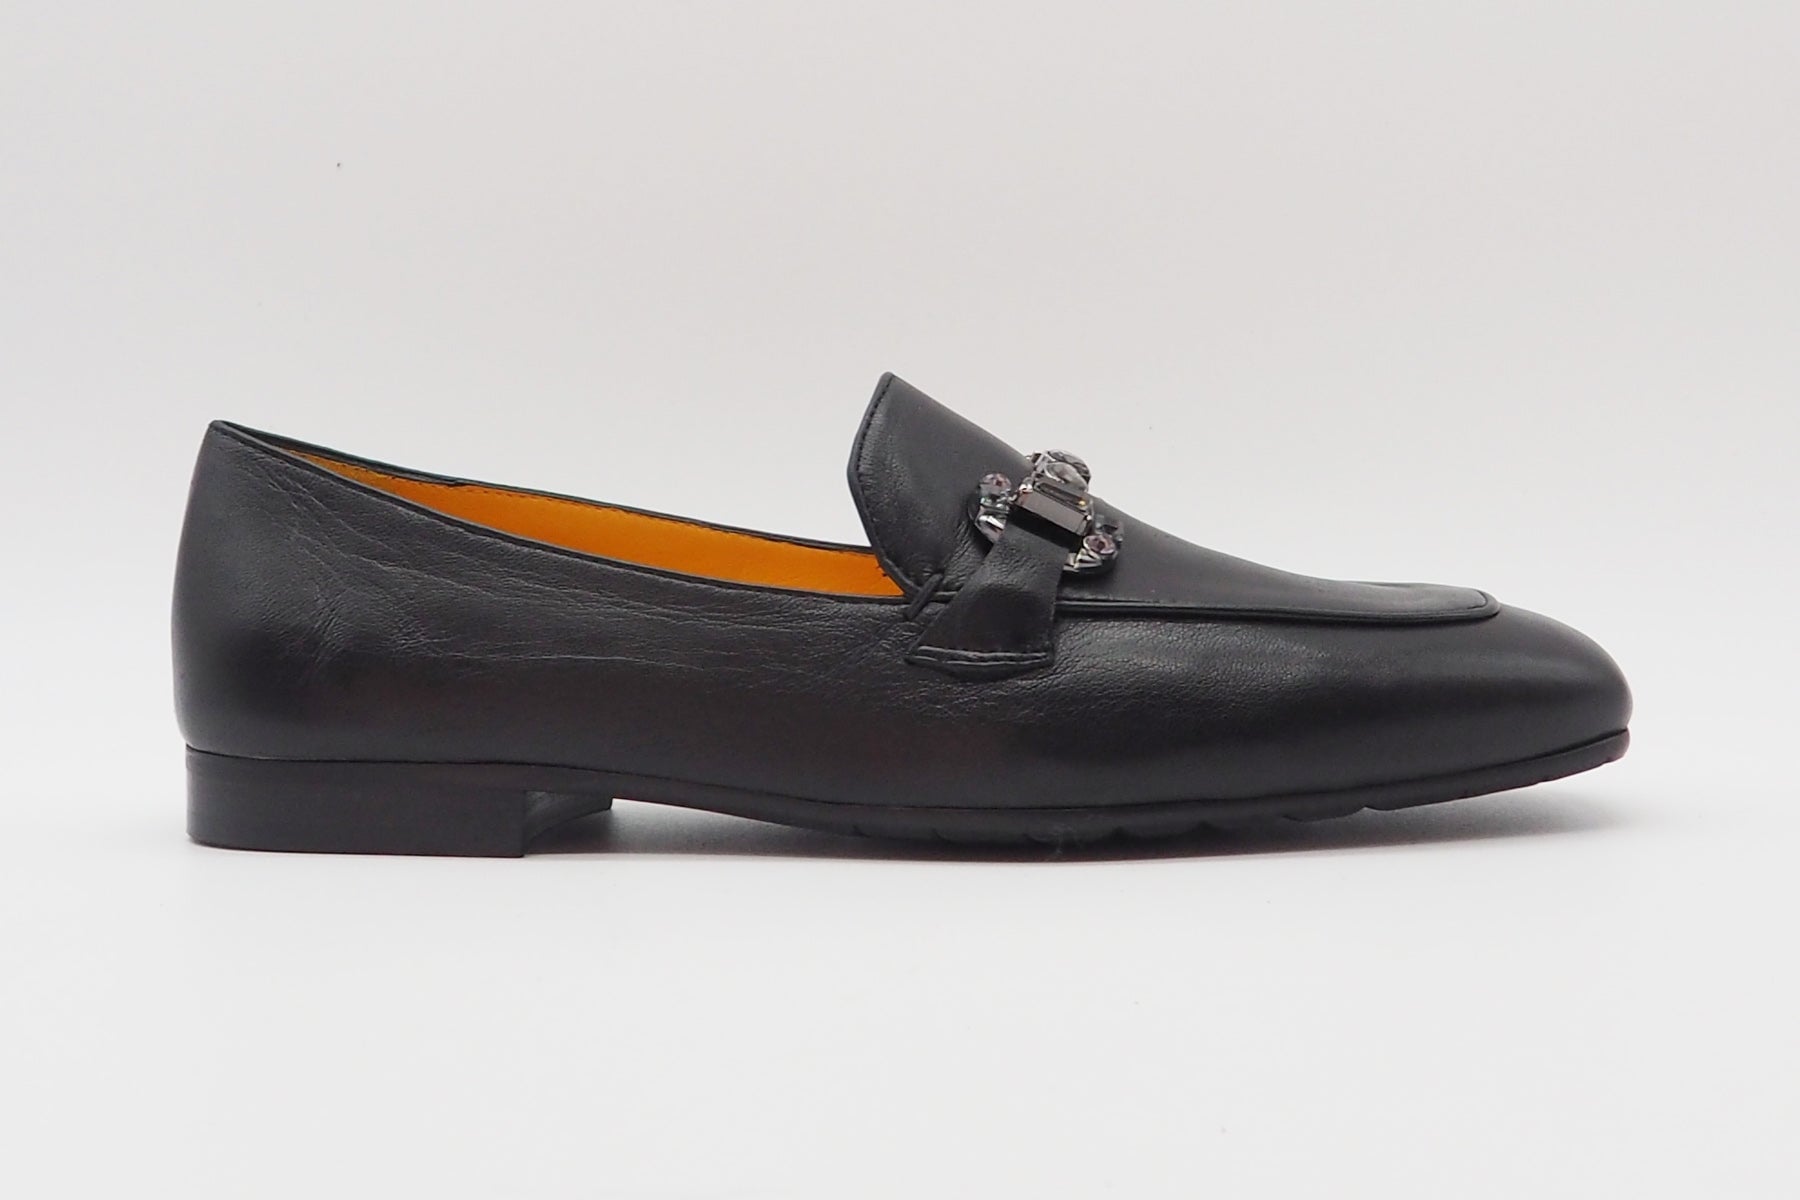 Damen Loafer aus Glattleder in Schwarz mit Trense Damen Loafers & Schnürer Mara Bini 